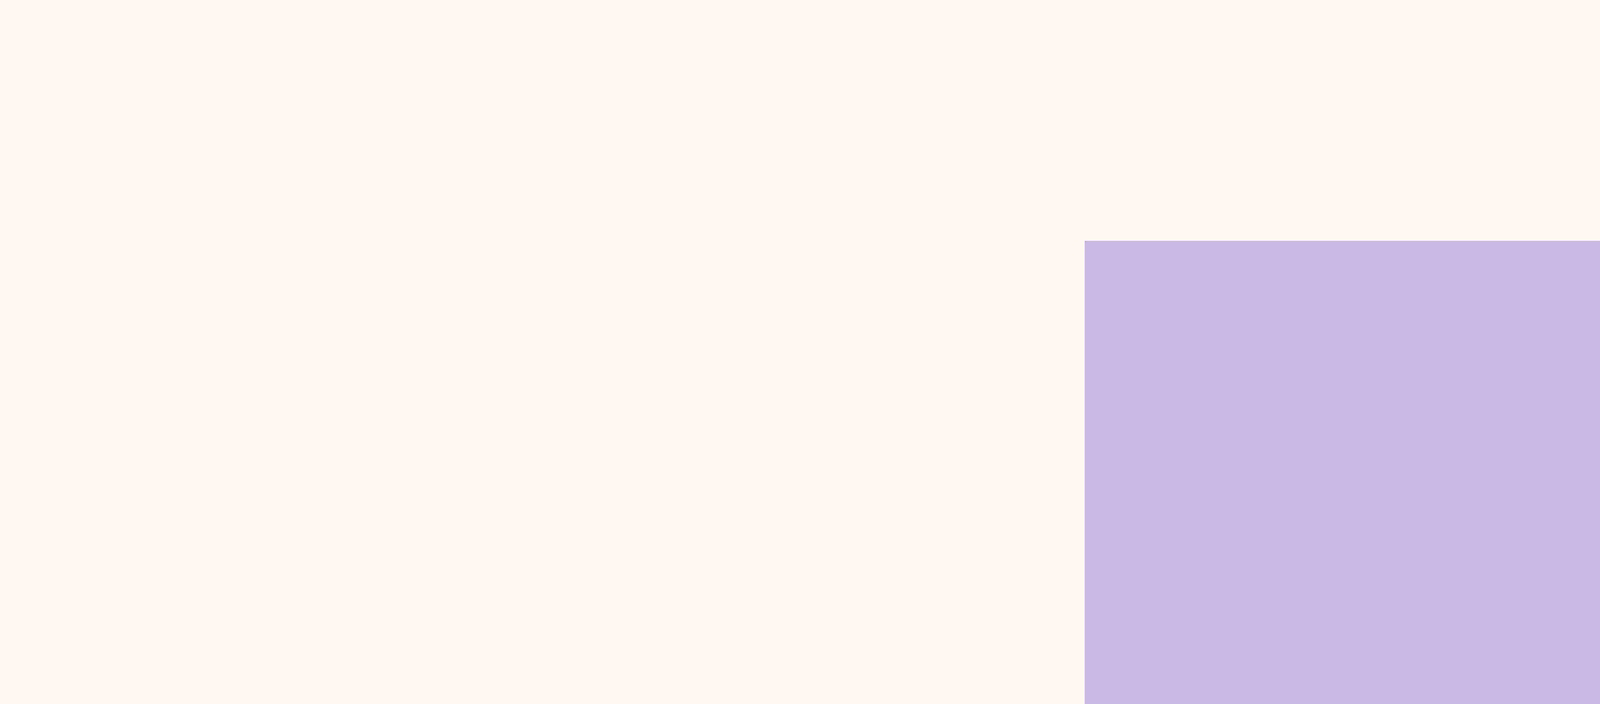 Image d’un carré violet et blanc.